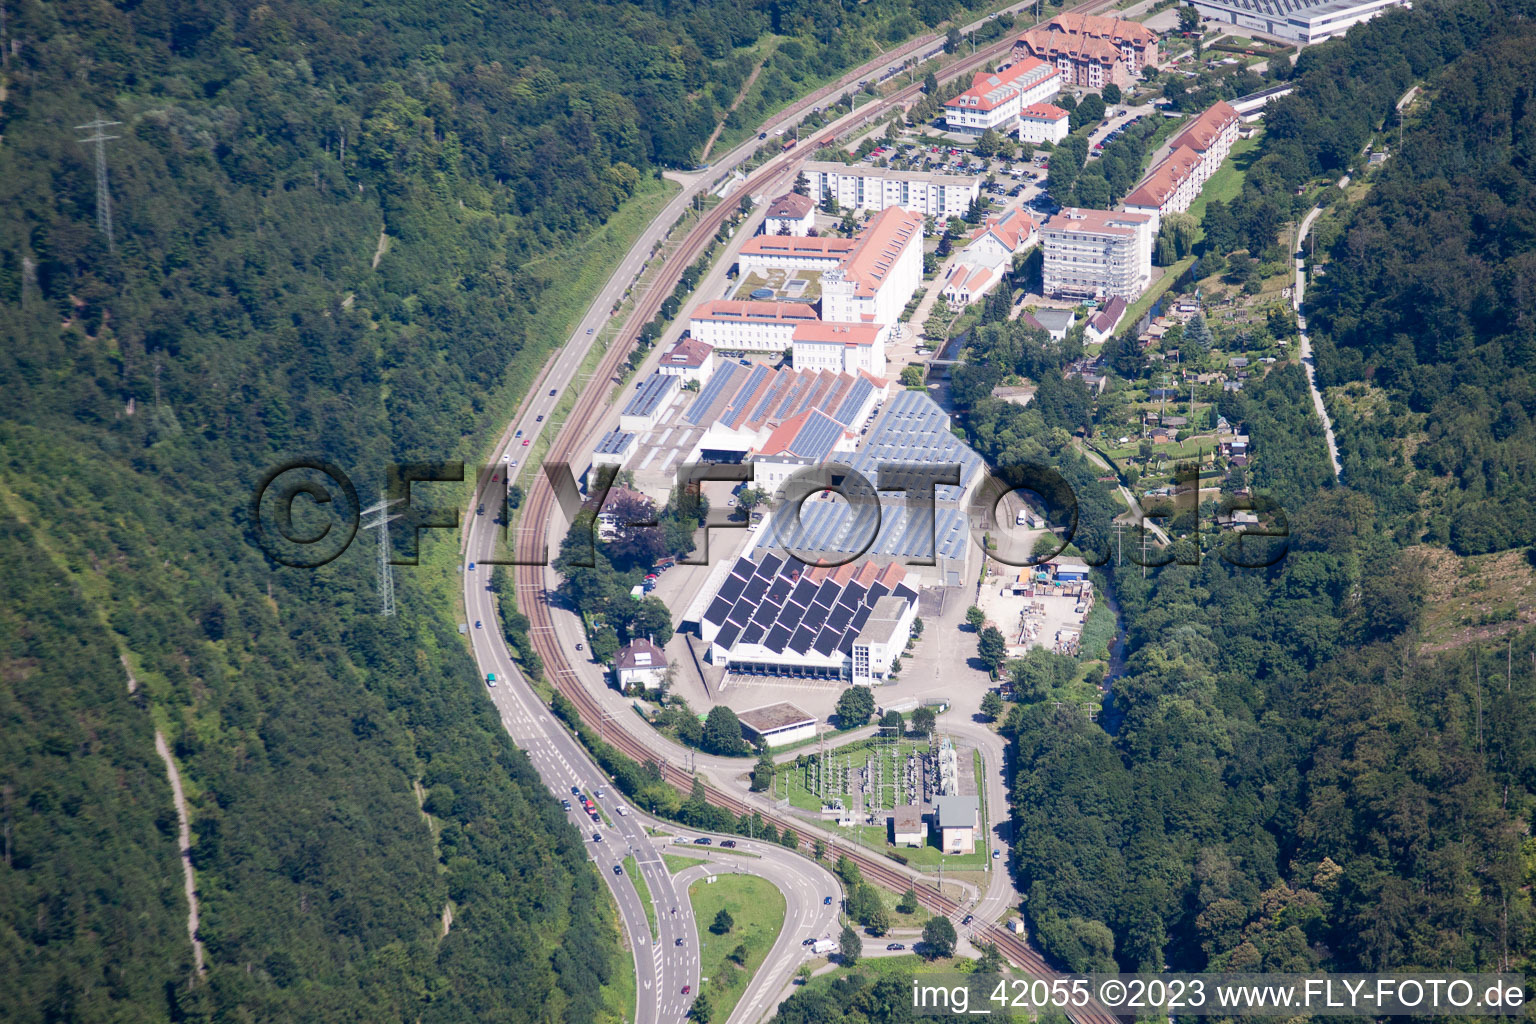 Luftbild von Spinnerei in Ettlingen im Bundesland Baden-Württemberg, Deutschland